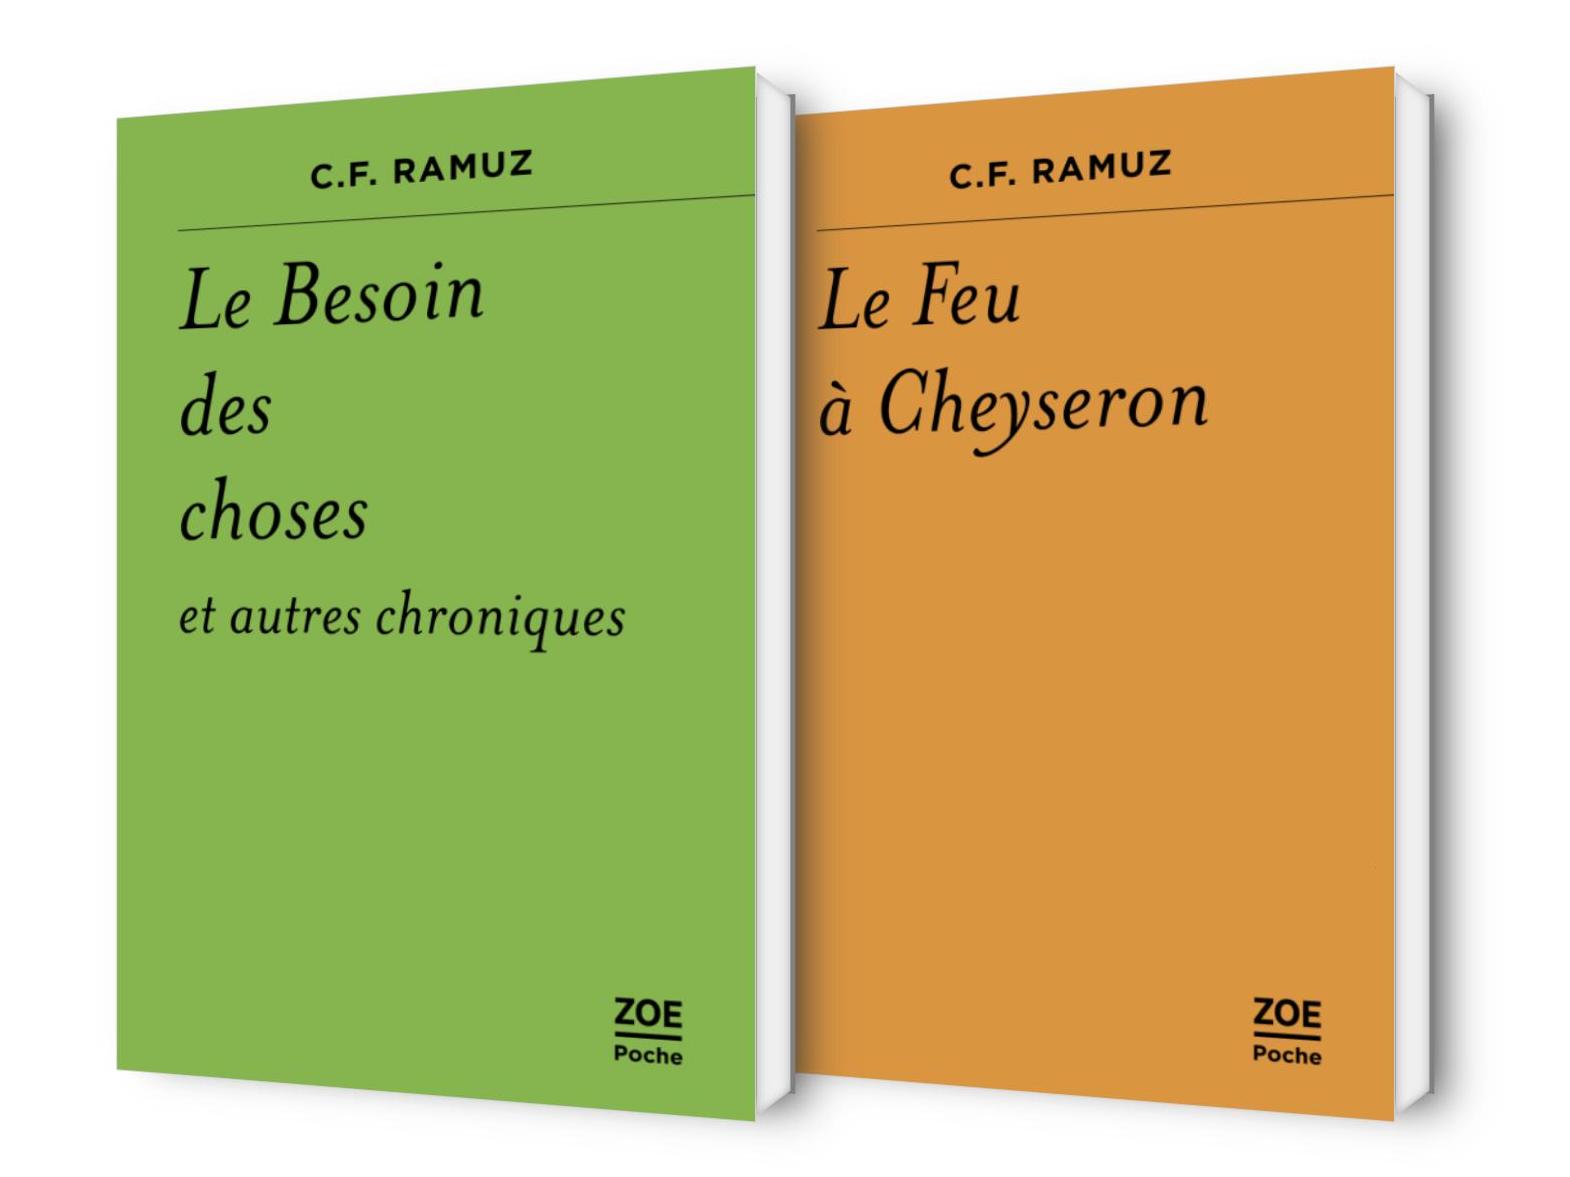 "C. F. Ramuz, Le Besoin des choses et autres chroniques" et "Le Feu à Cheyseron" de C. F. Ramuz